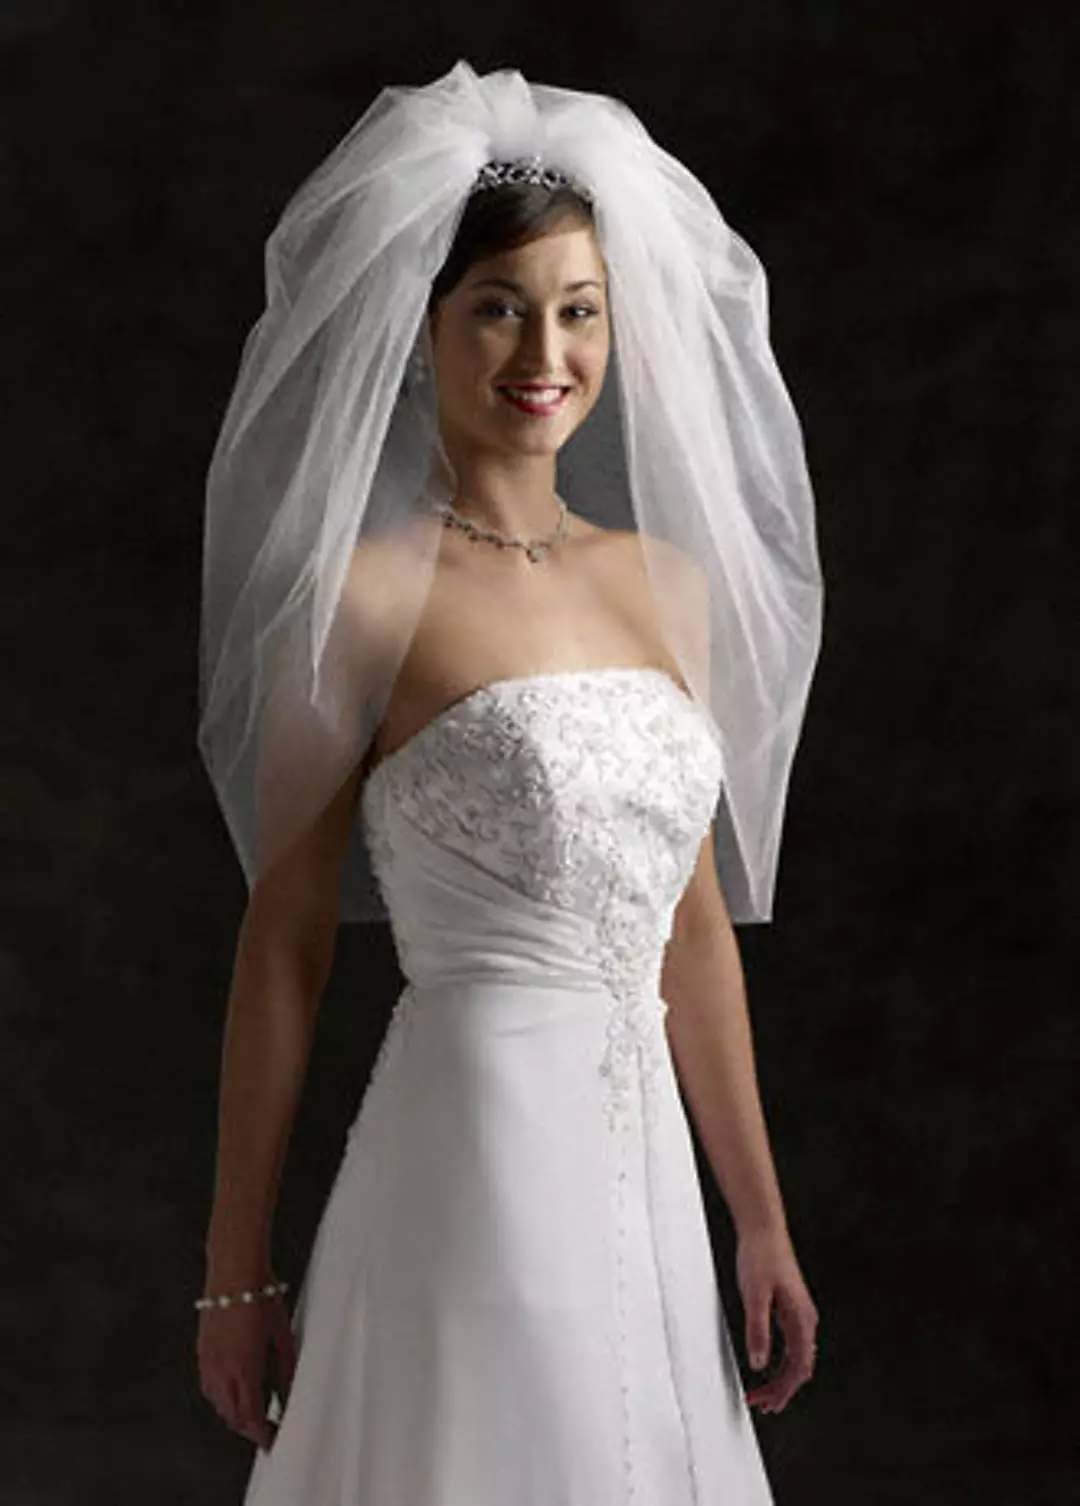 Bridal Short Veil, 2 Tier with Plain with Bubble Hem